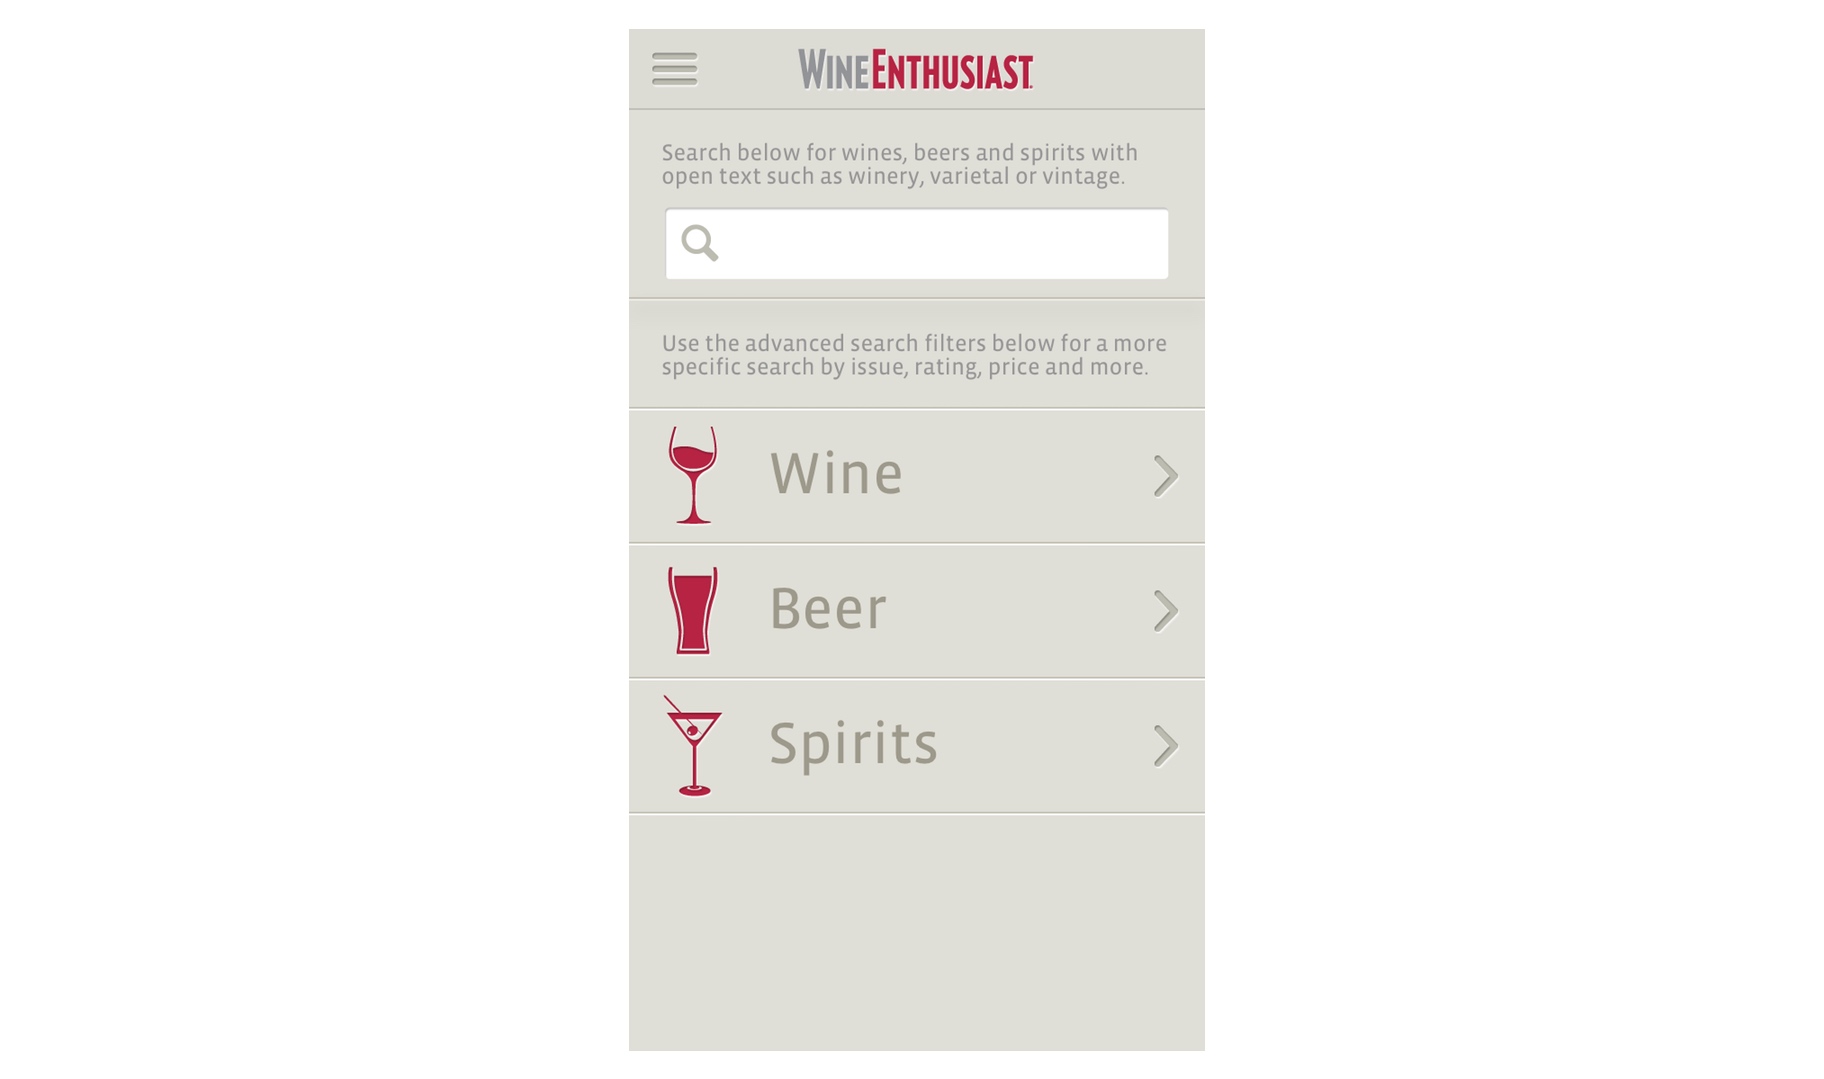 Бесплатный сайт пробить вин. Wine enthusiast рейтинг. Приложения для выбора вина. Приложение рейтинг вина по фото. Приложение для оценки вина по фото.